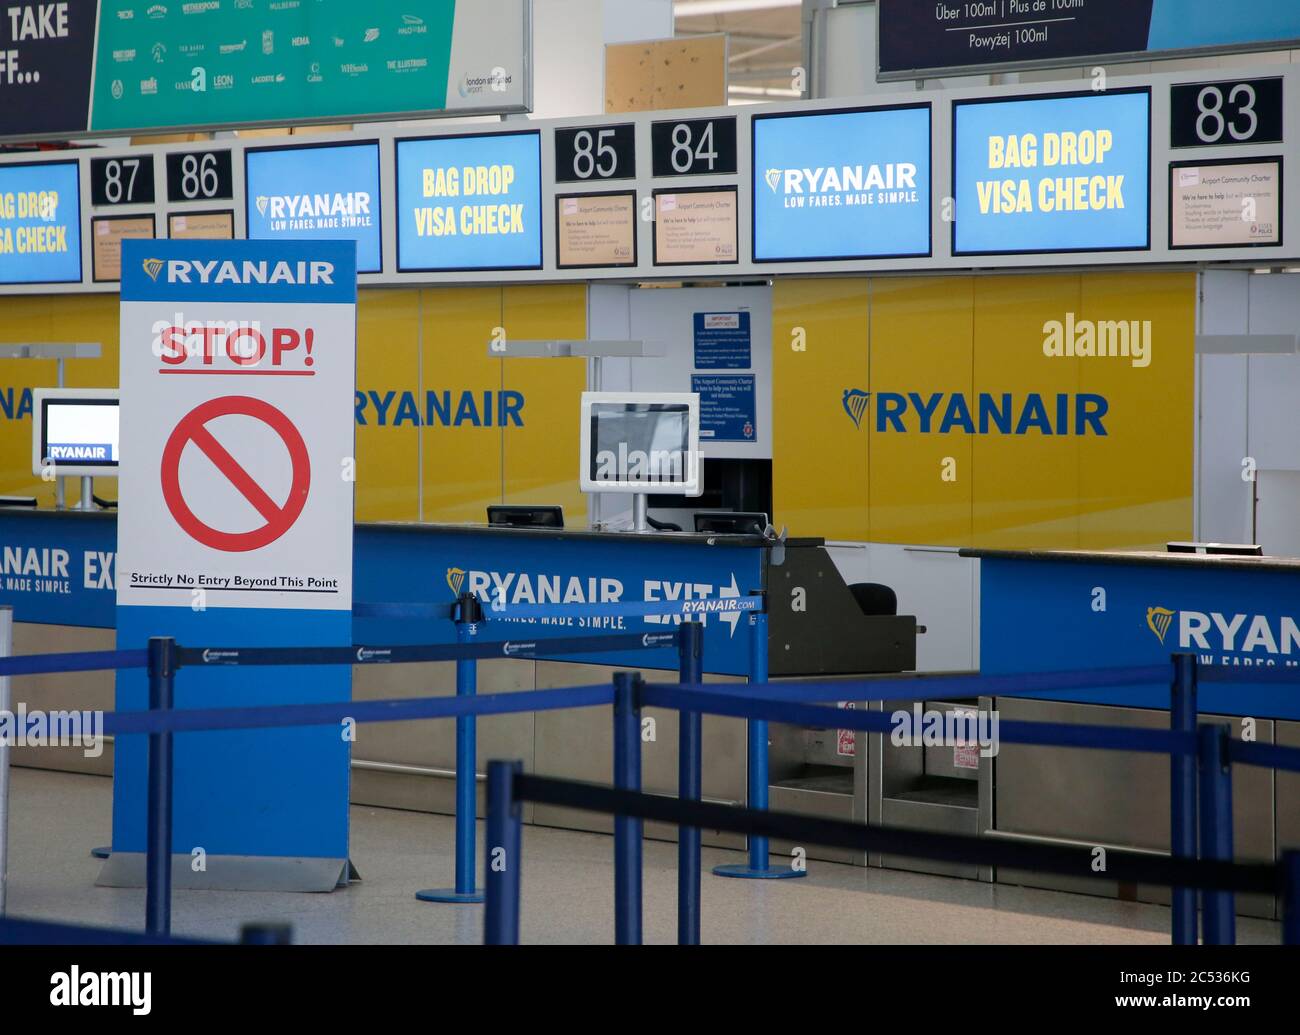 Ryanair Check In Stockfotos und -bilder Kaufen - Alamy